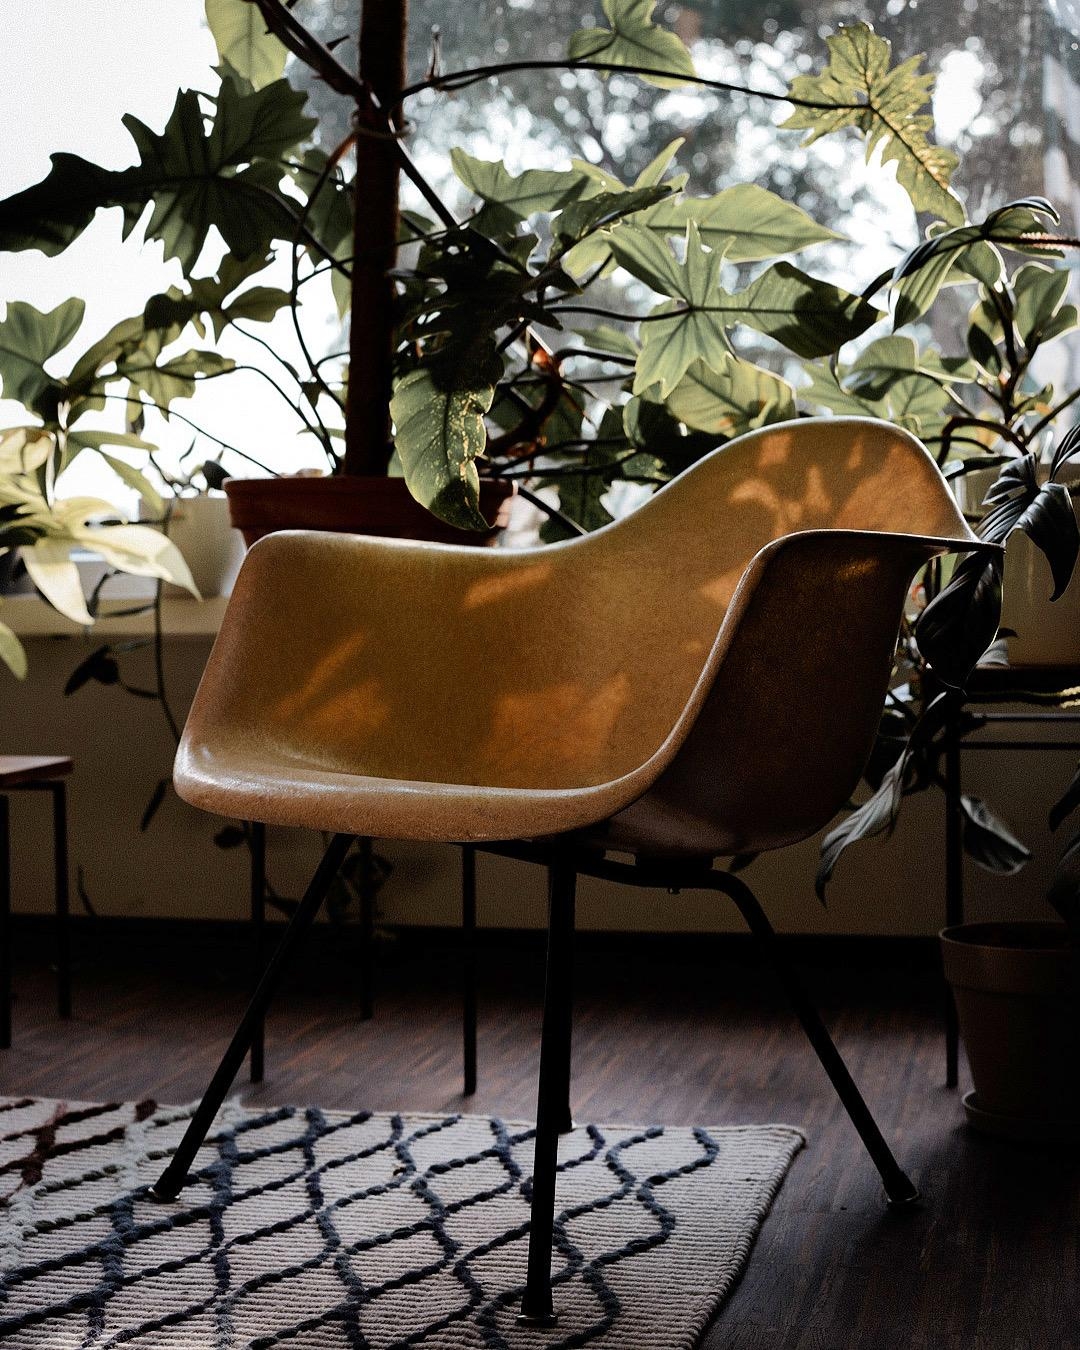 Der gute alte Eames Armchair im Abendsonnenlicht #eames #armchair